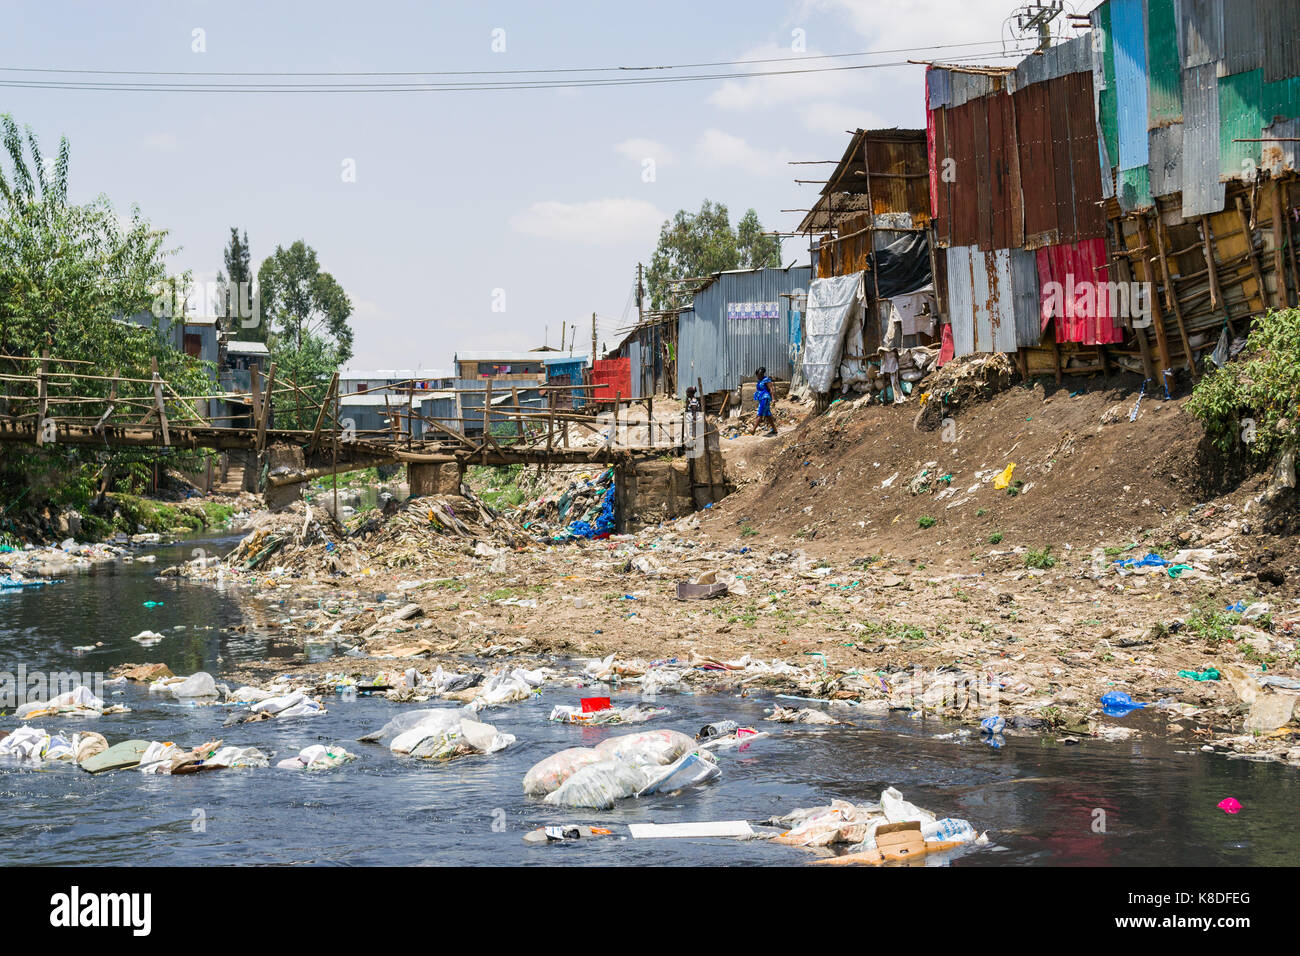 Slum Hütten Linie Ngong Fluss, der mit Müll verunreinigt ist, Kunststoff Abfall und Müll, eine provisorische Holzbrücke überquert es, Nairobi, Kenia Stockfoto